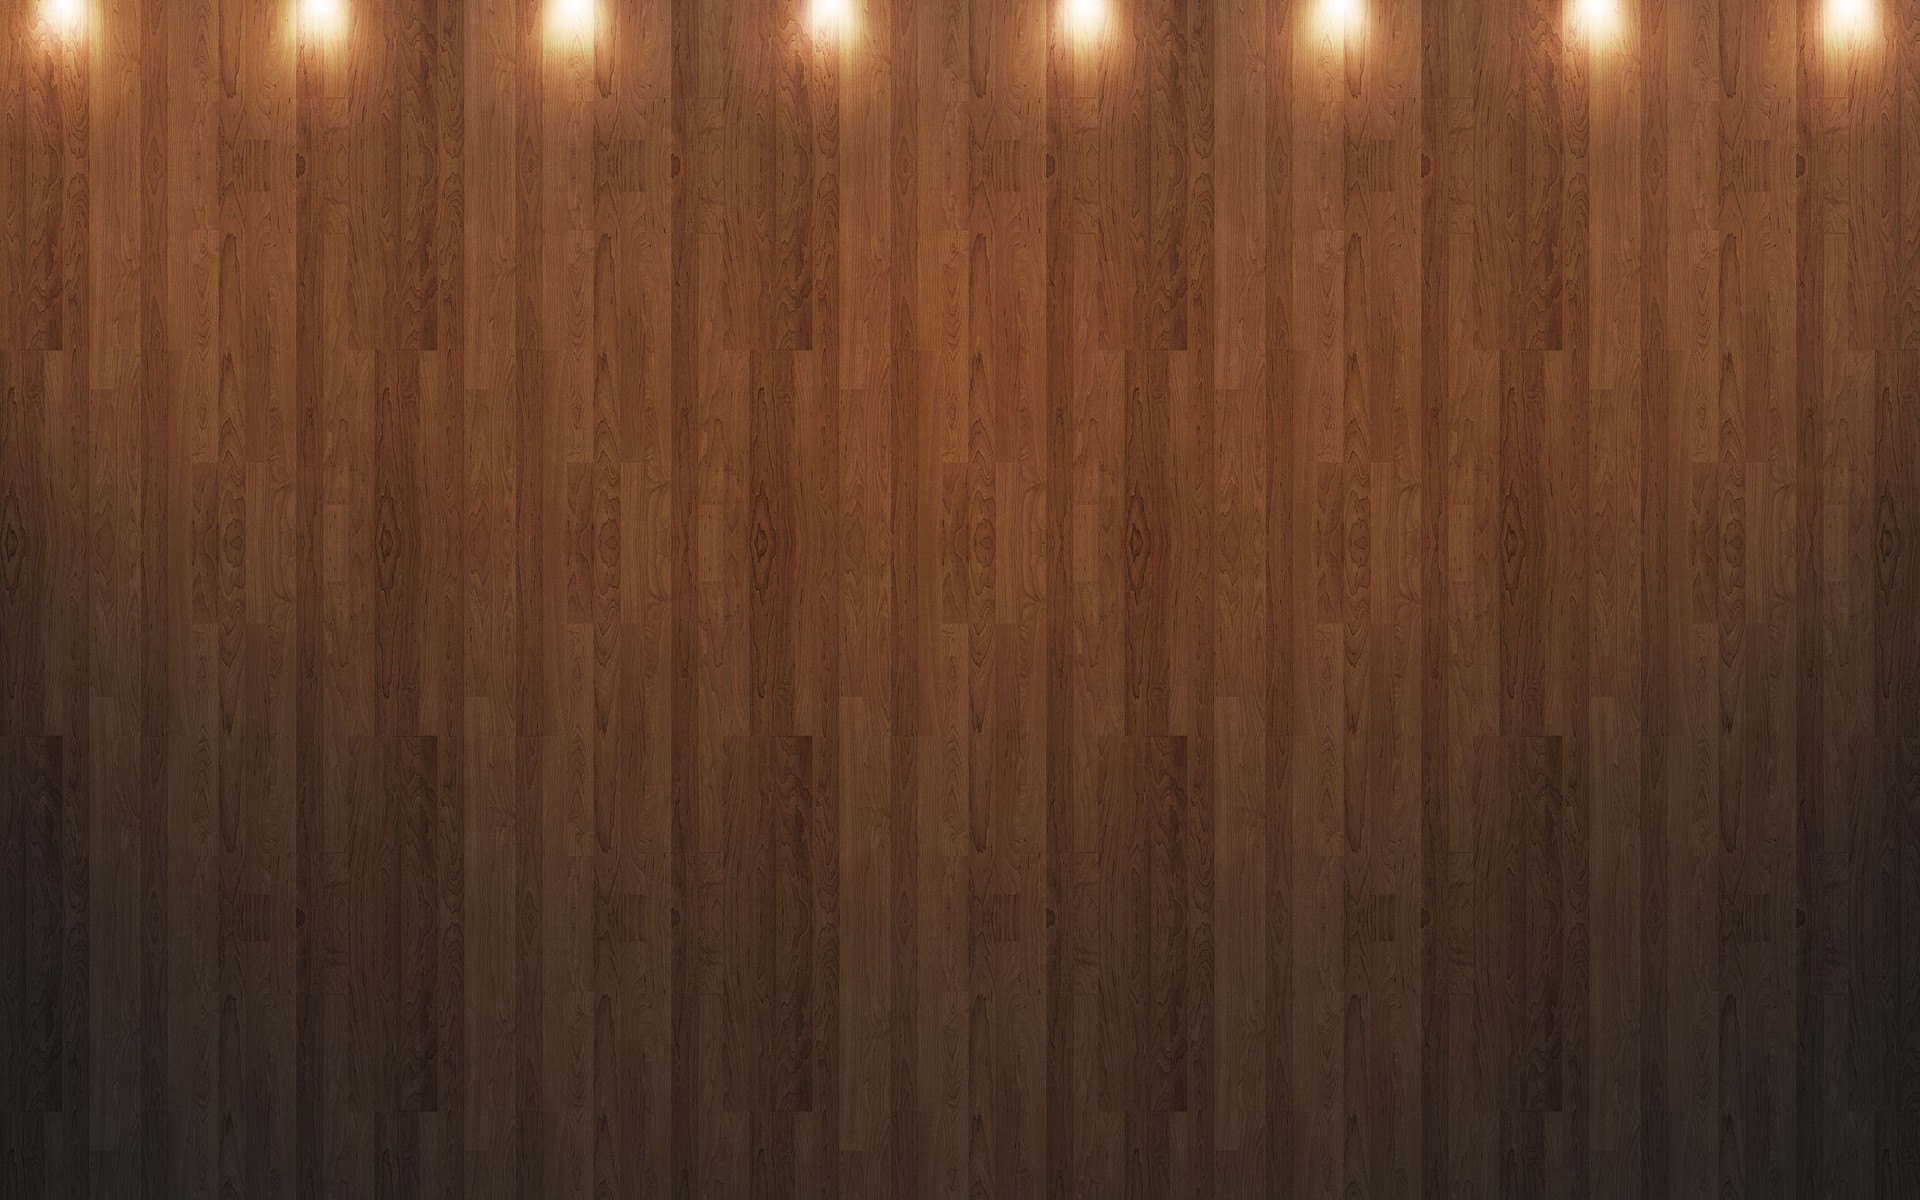 Wood Floor With Lights Wallpaper